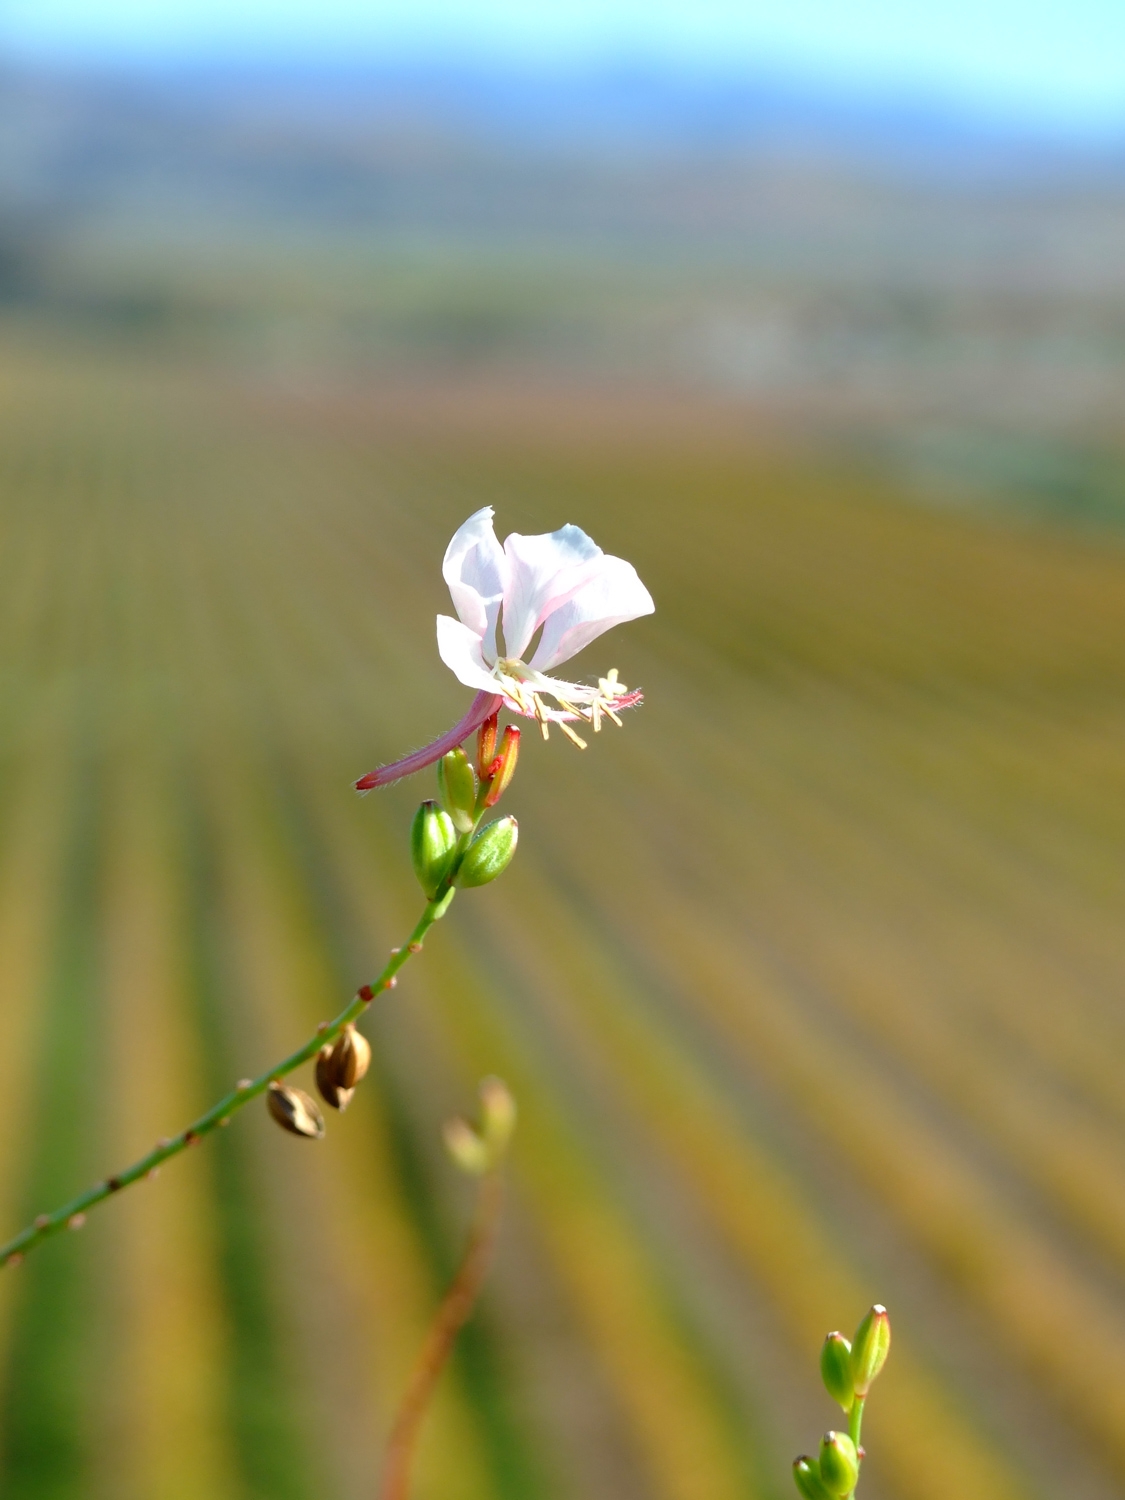 A Single Flower Amongst A Field Of Wine